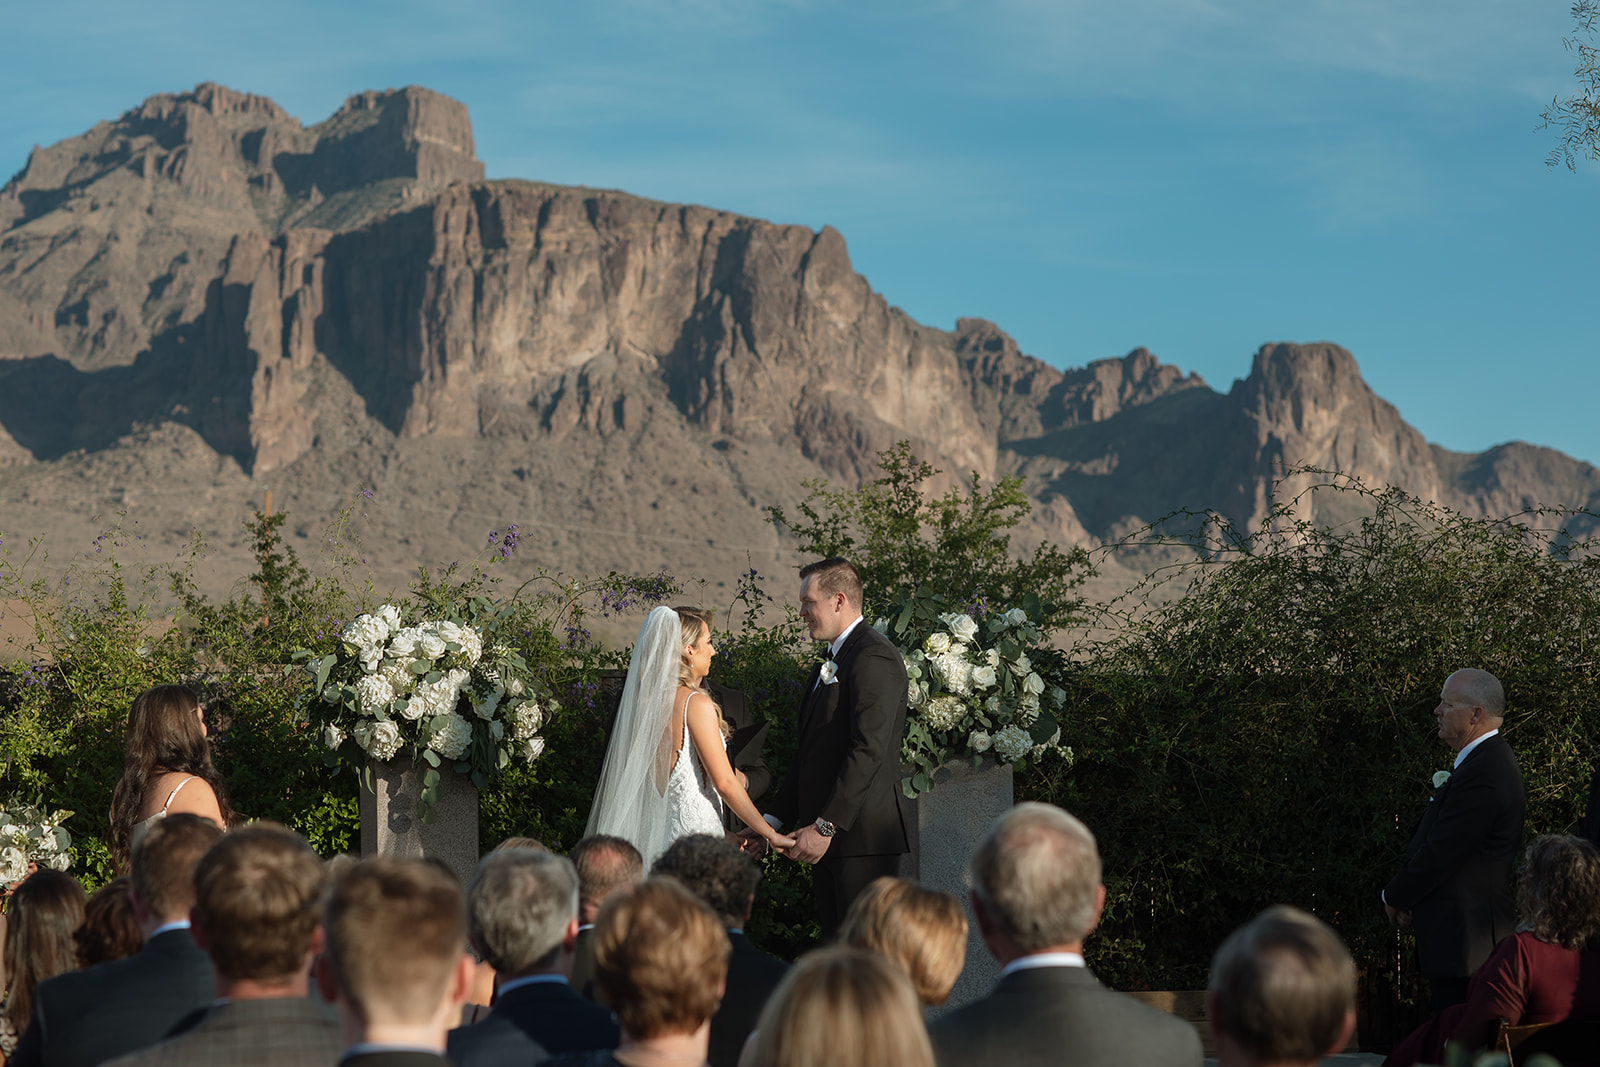 Paseo Wedding Venue, arizona wedding photographer, desert wedding